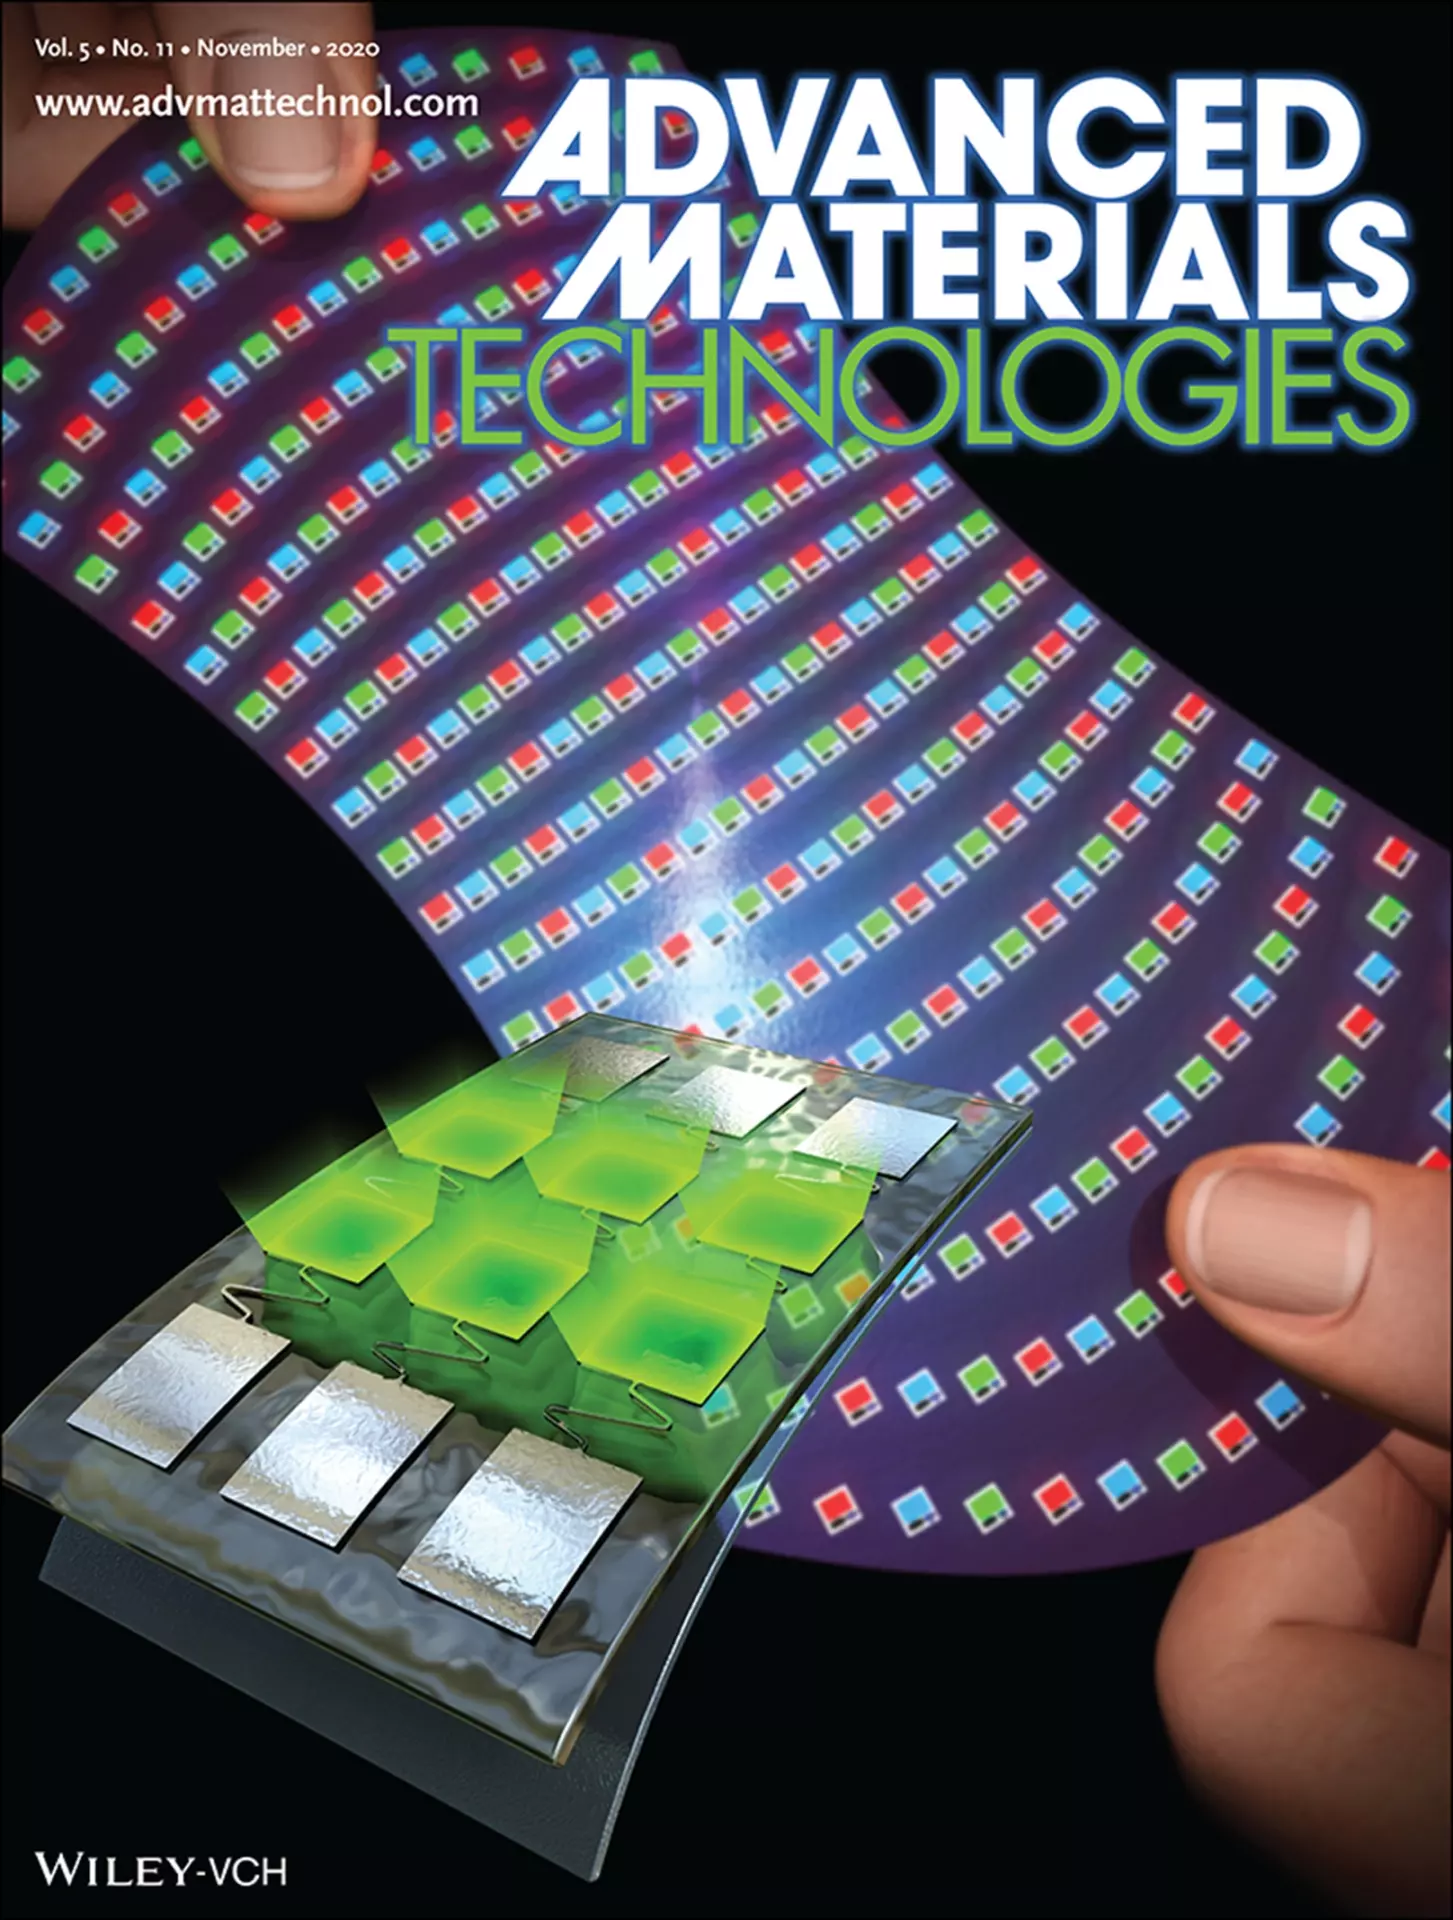 Couverture du magazine Advanced Materials Technologies de novembre 2020.